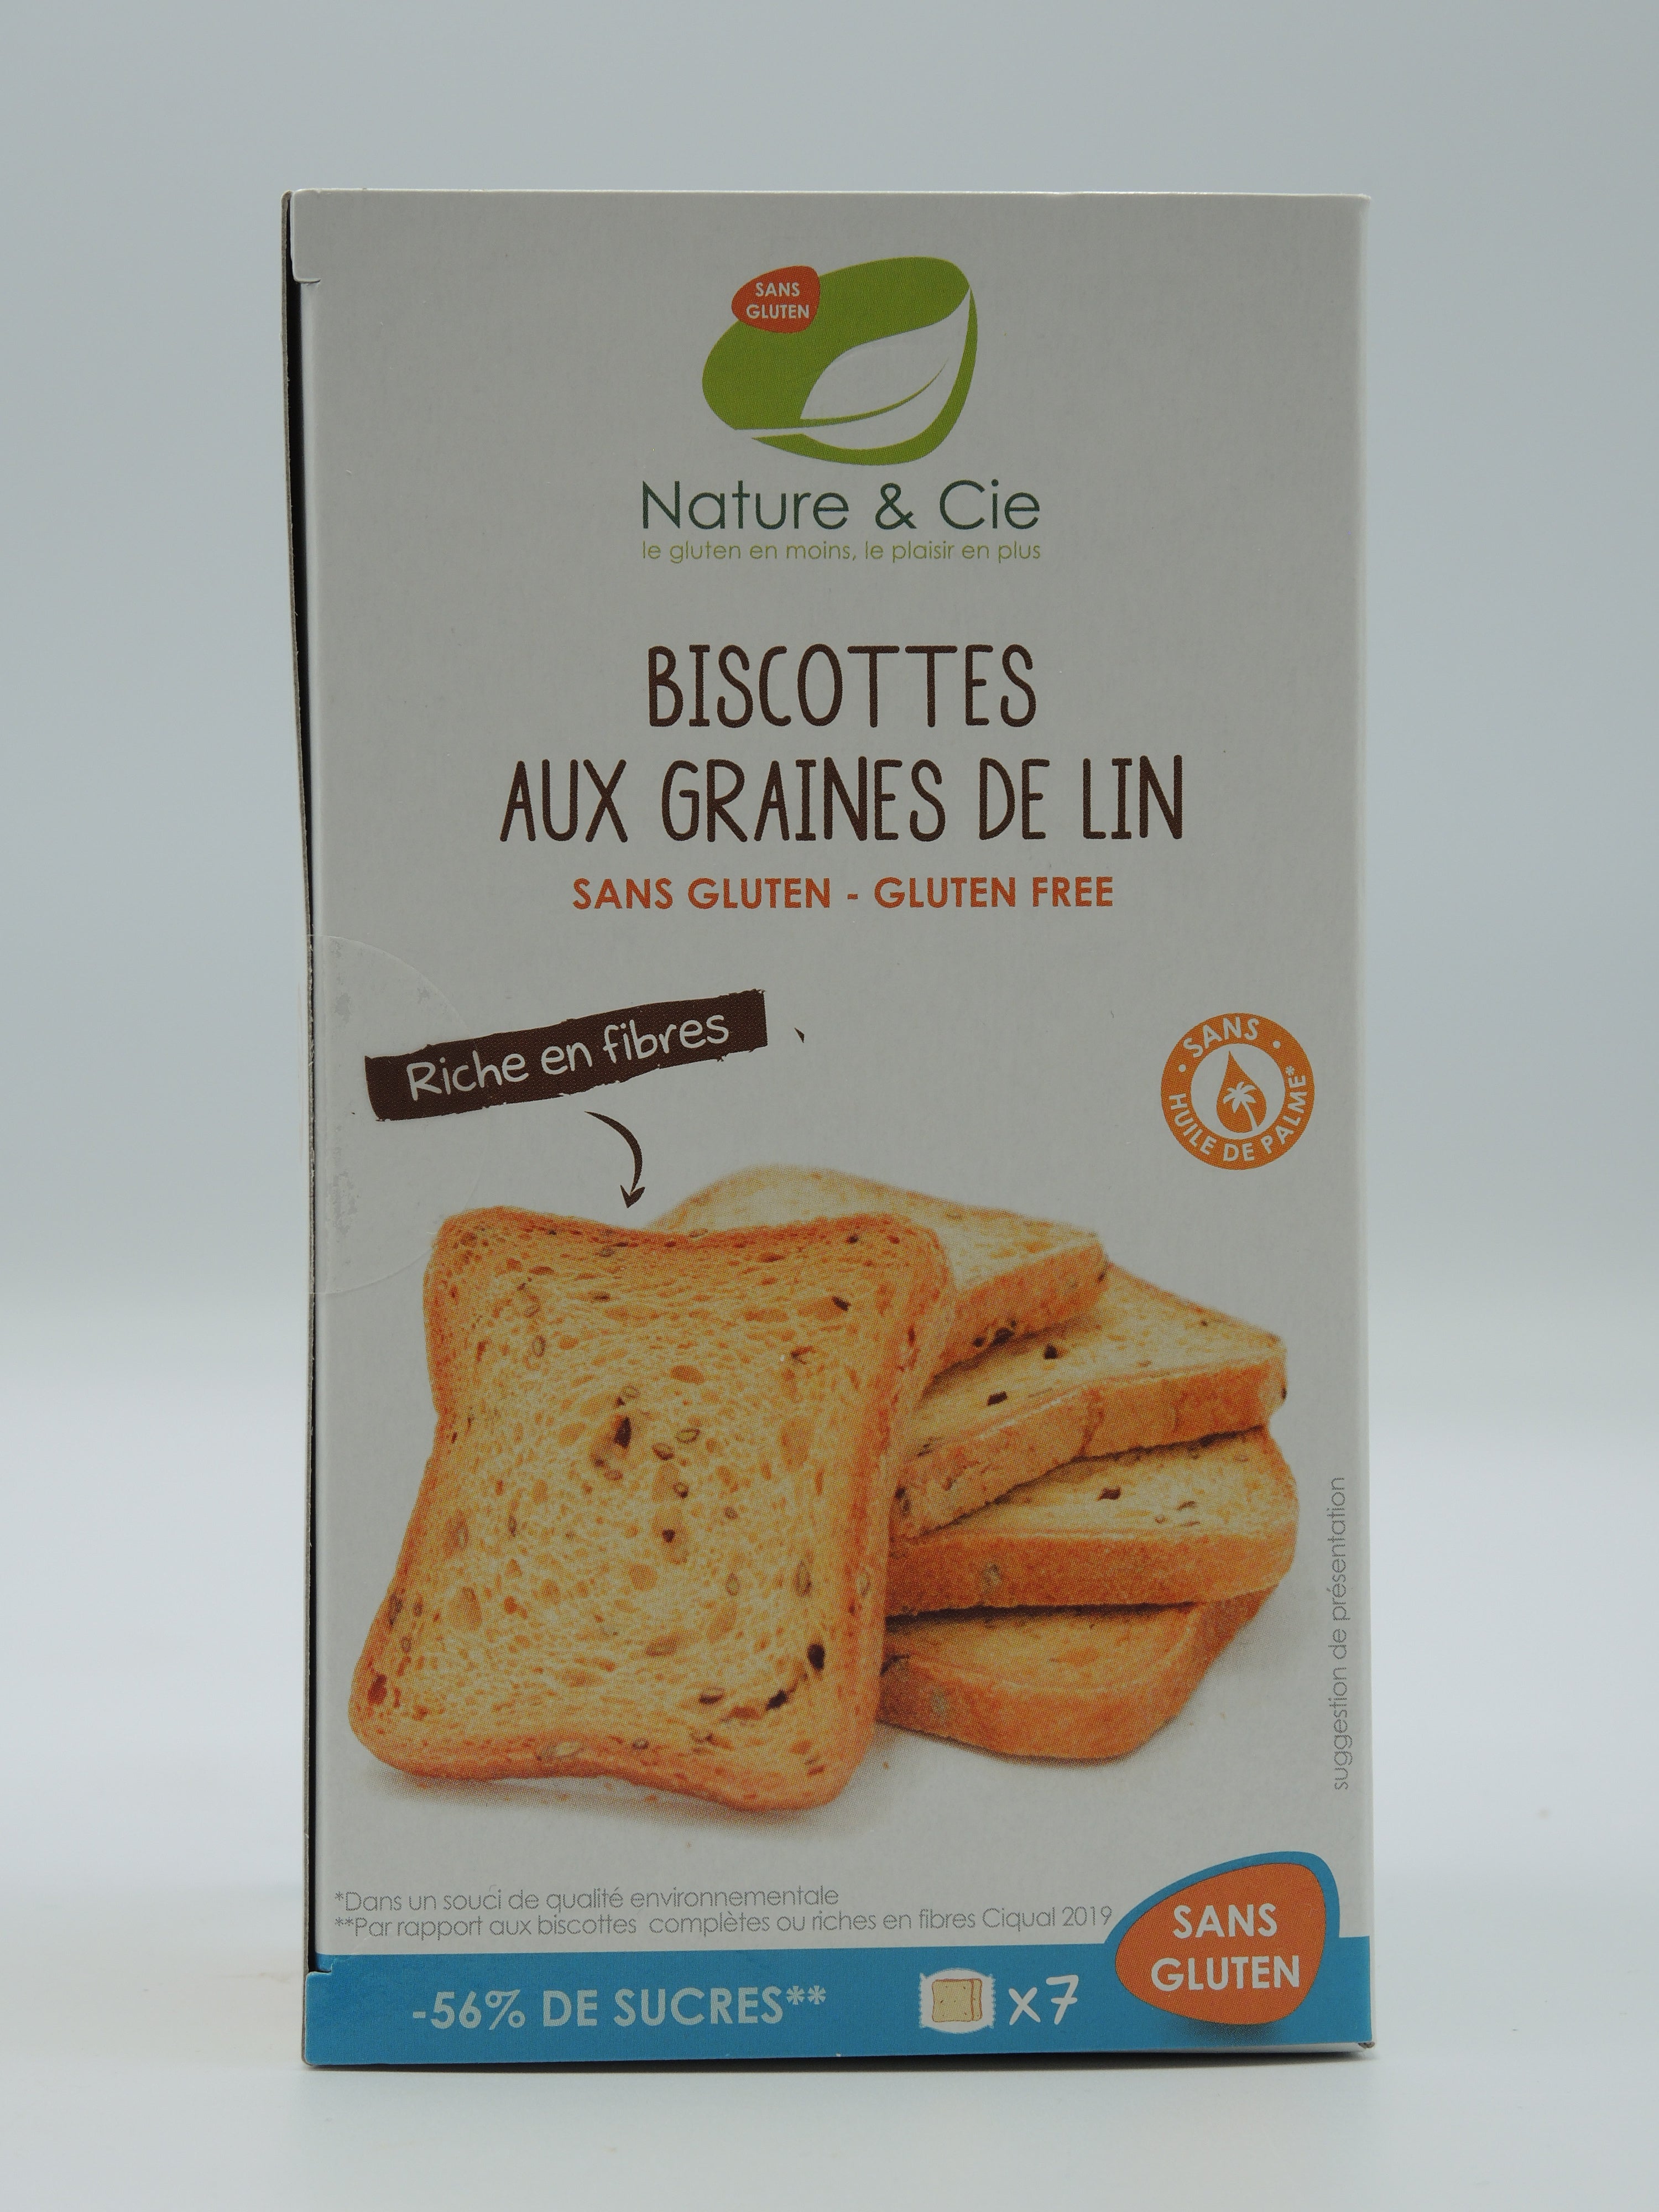 Biscottes aux graines de lin, 182g, Nature & Cie